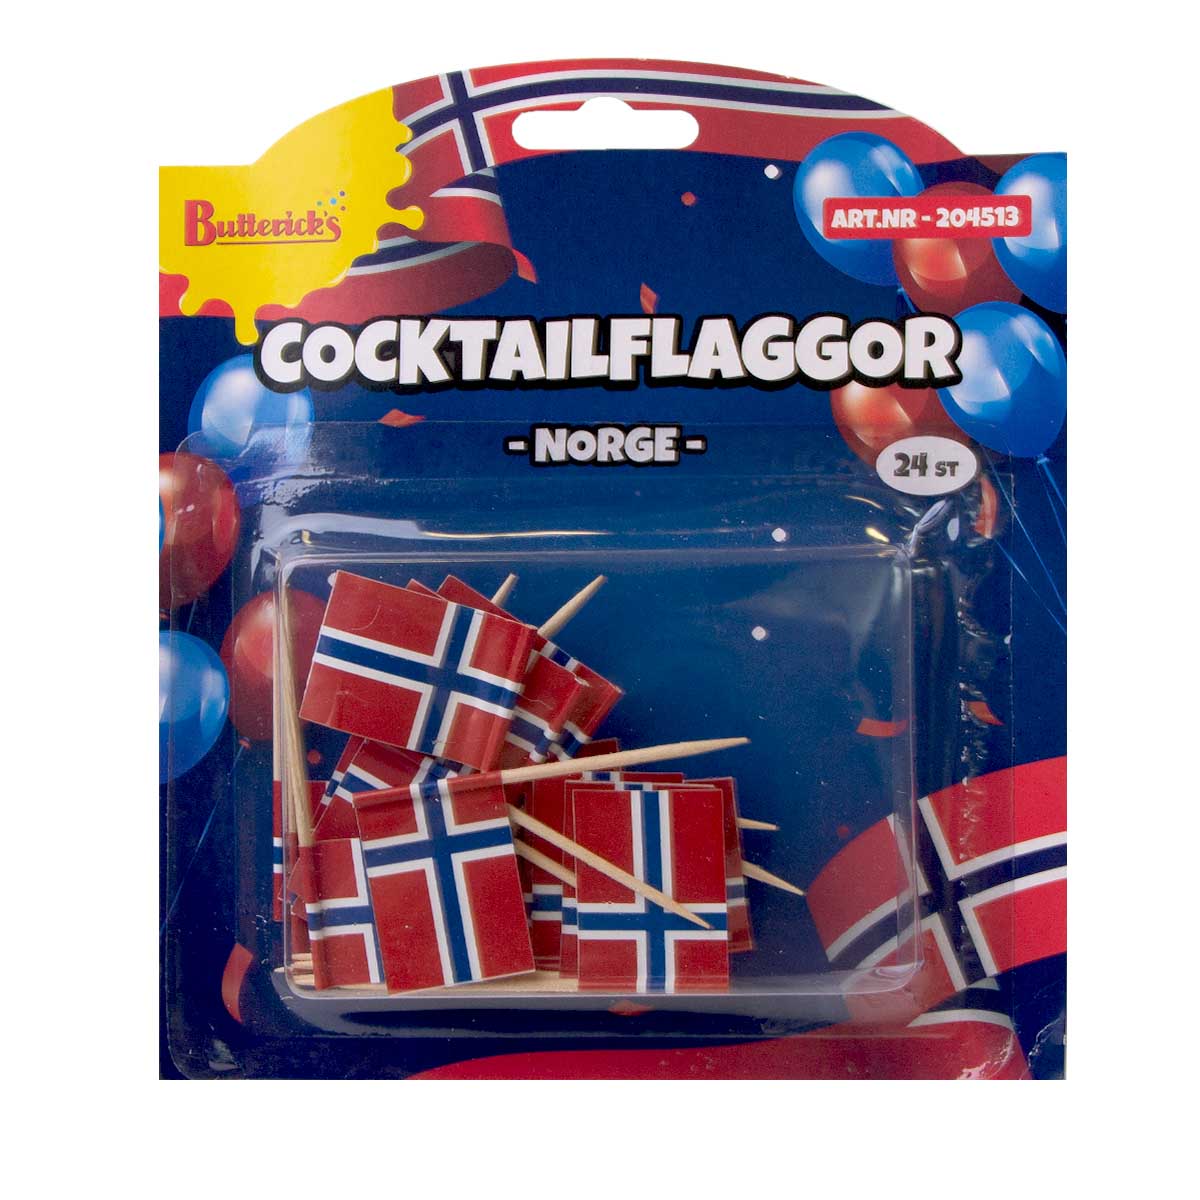 Cocktailflaggor Norge 24 st